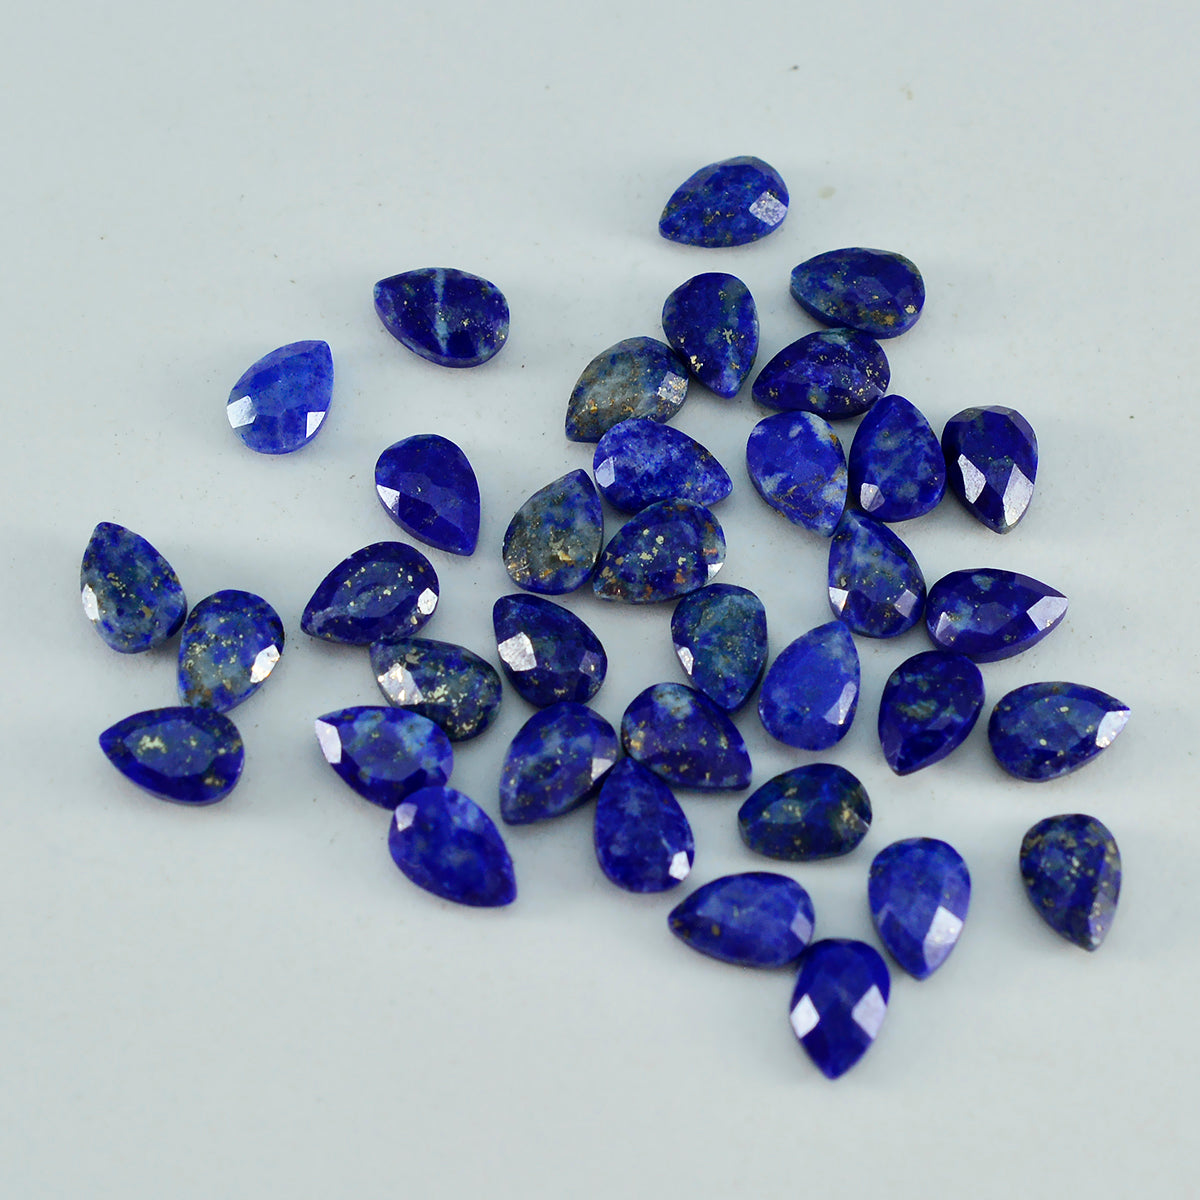 Riyogems 1 Stück echter blauer Lapislazuli, facettiert, 3 x 5 mm, Birnenform, tolle Qualitäts-Edelsteine